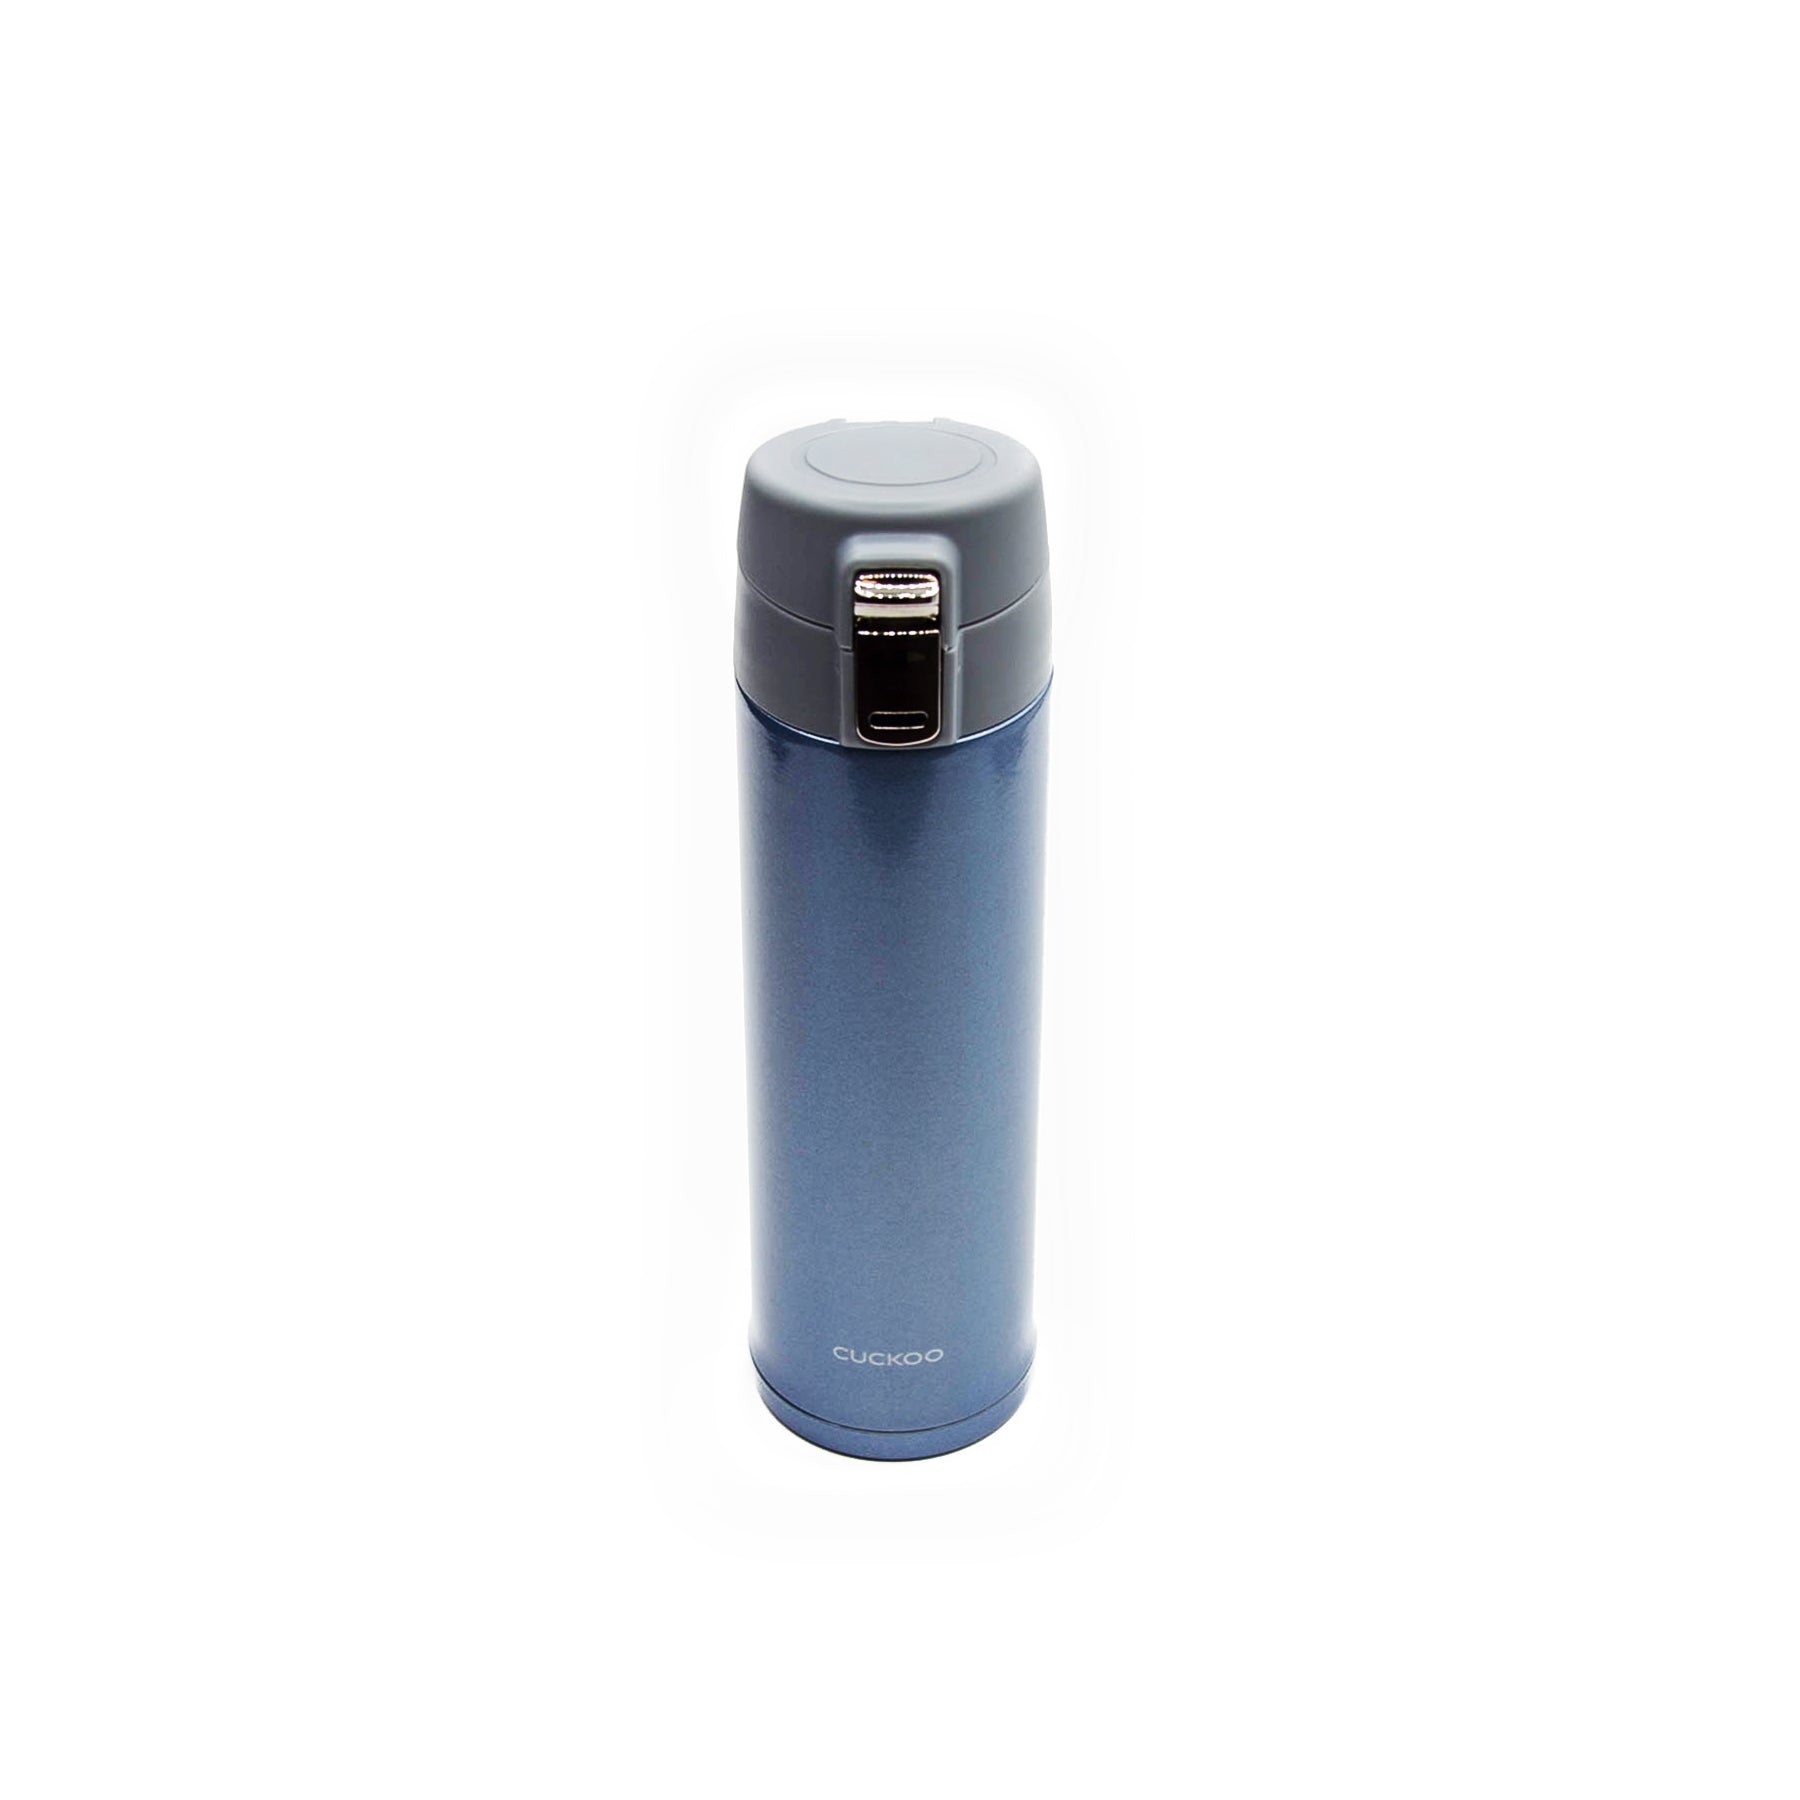 Zojirushi Vacuum Insulated Portable Mug, Smoky Blue, 12 oz